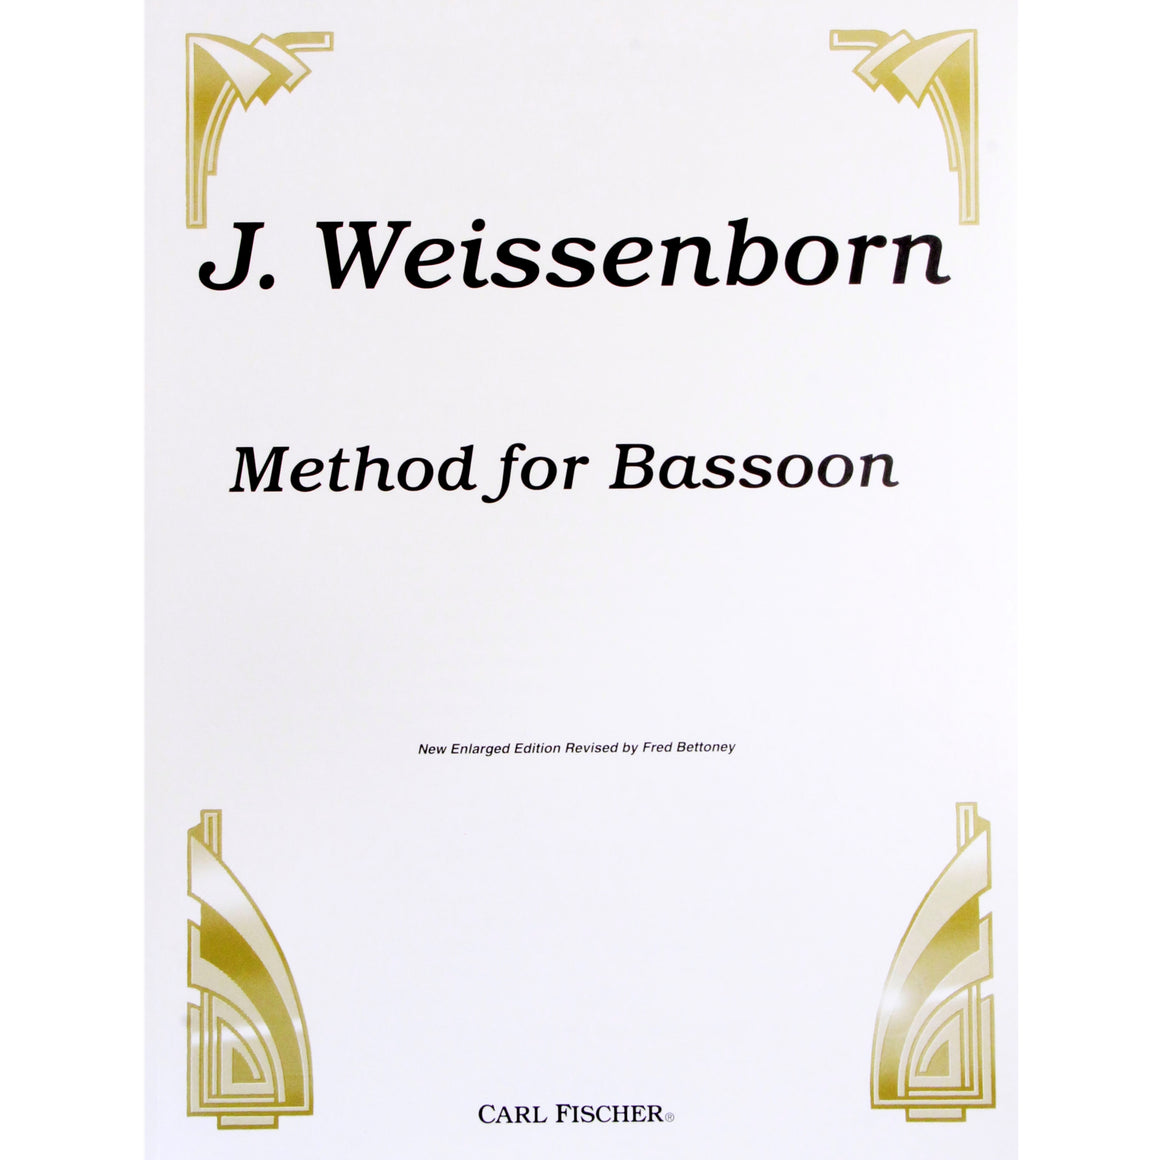 CARL FISCHER CU96 Method For Bassoon